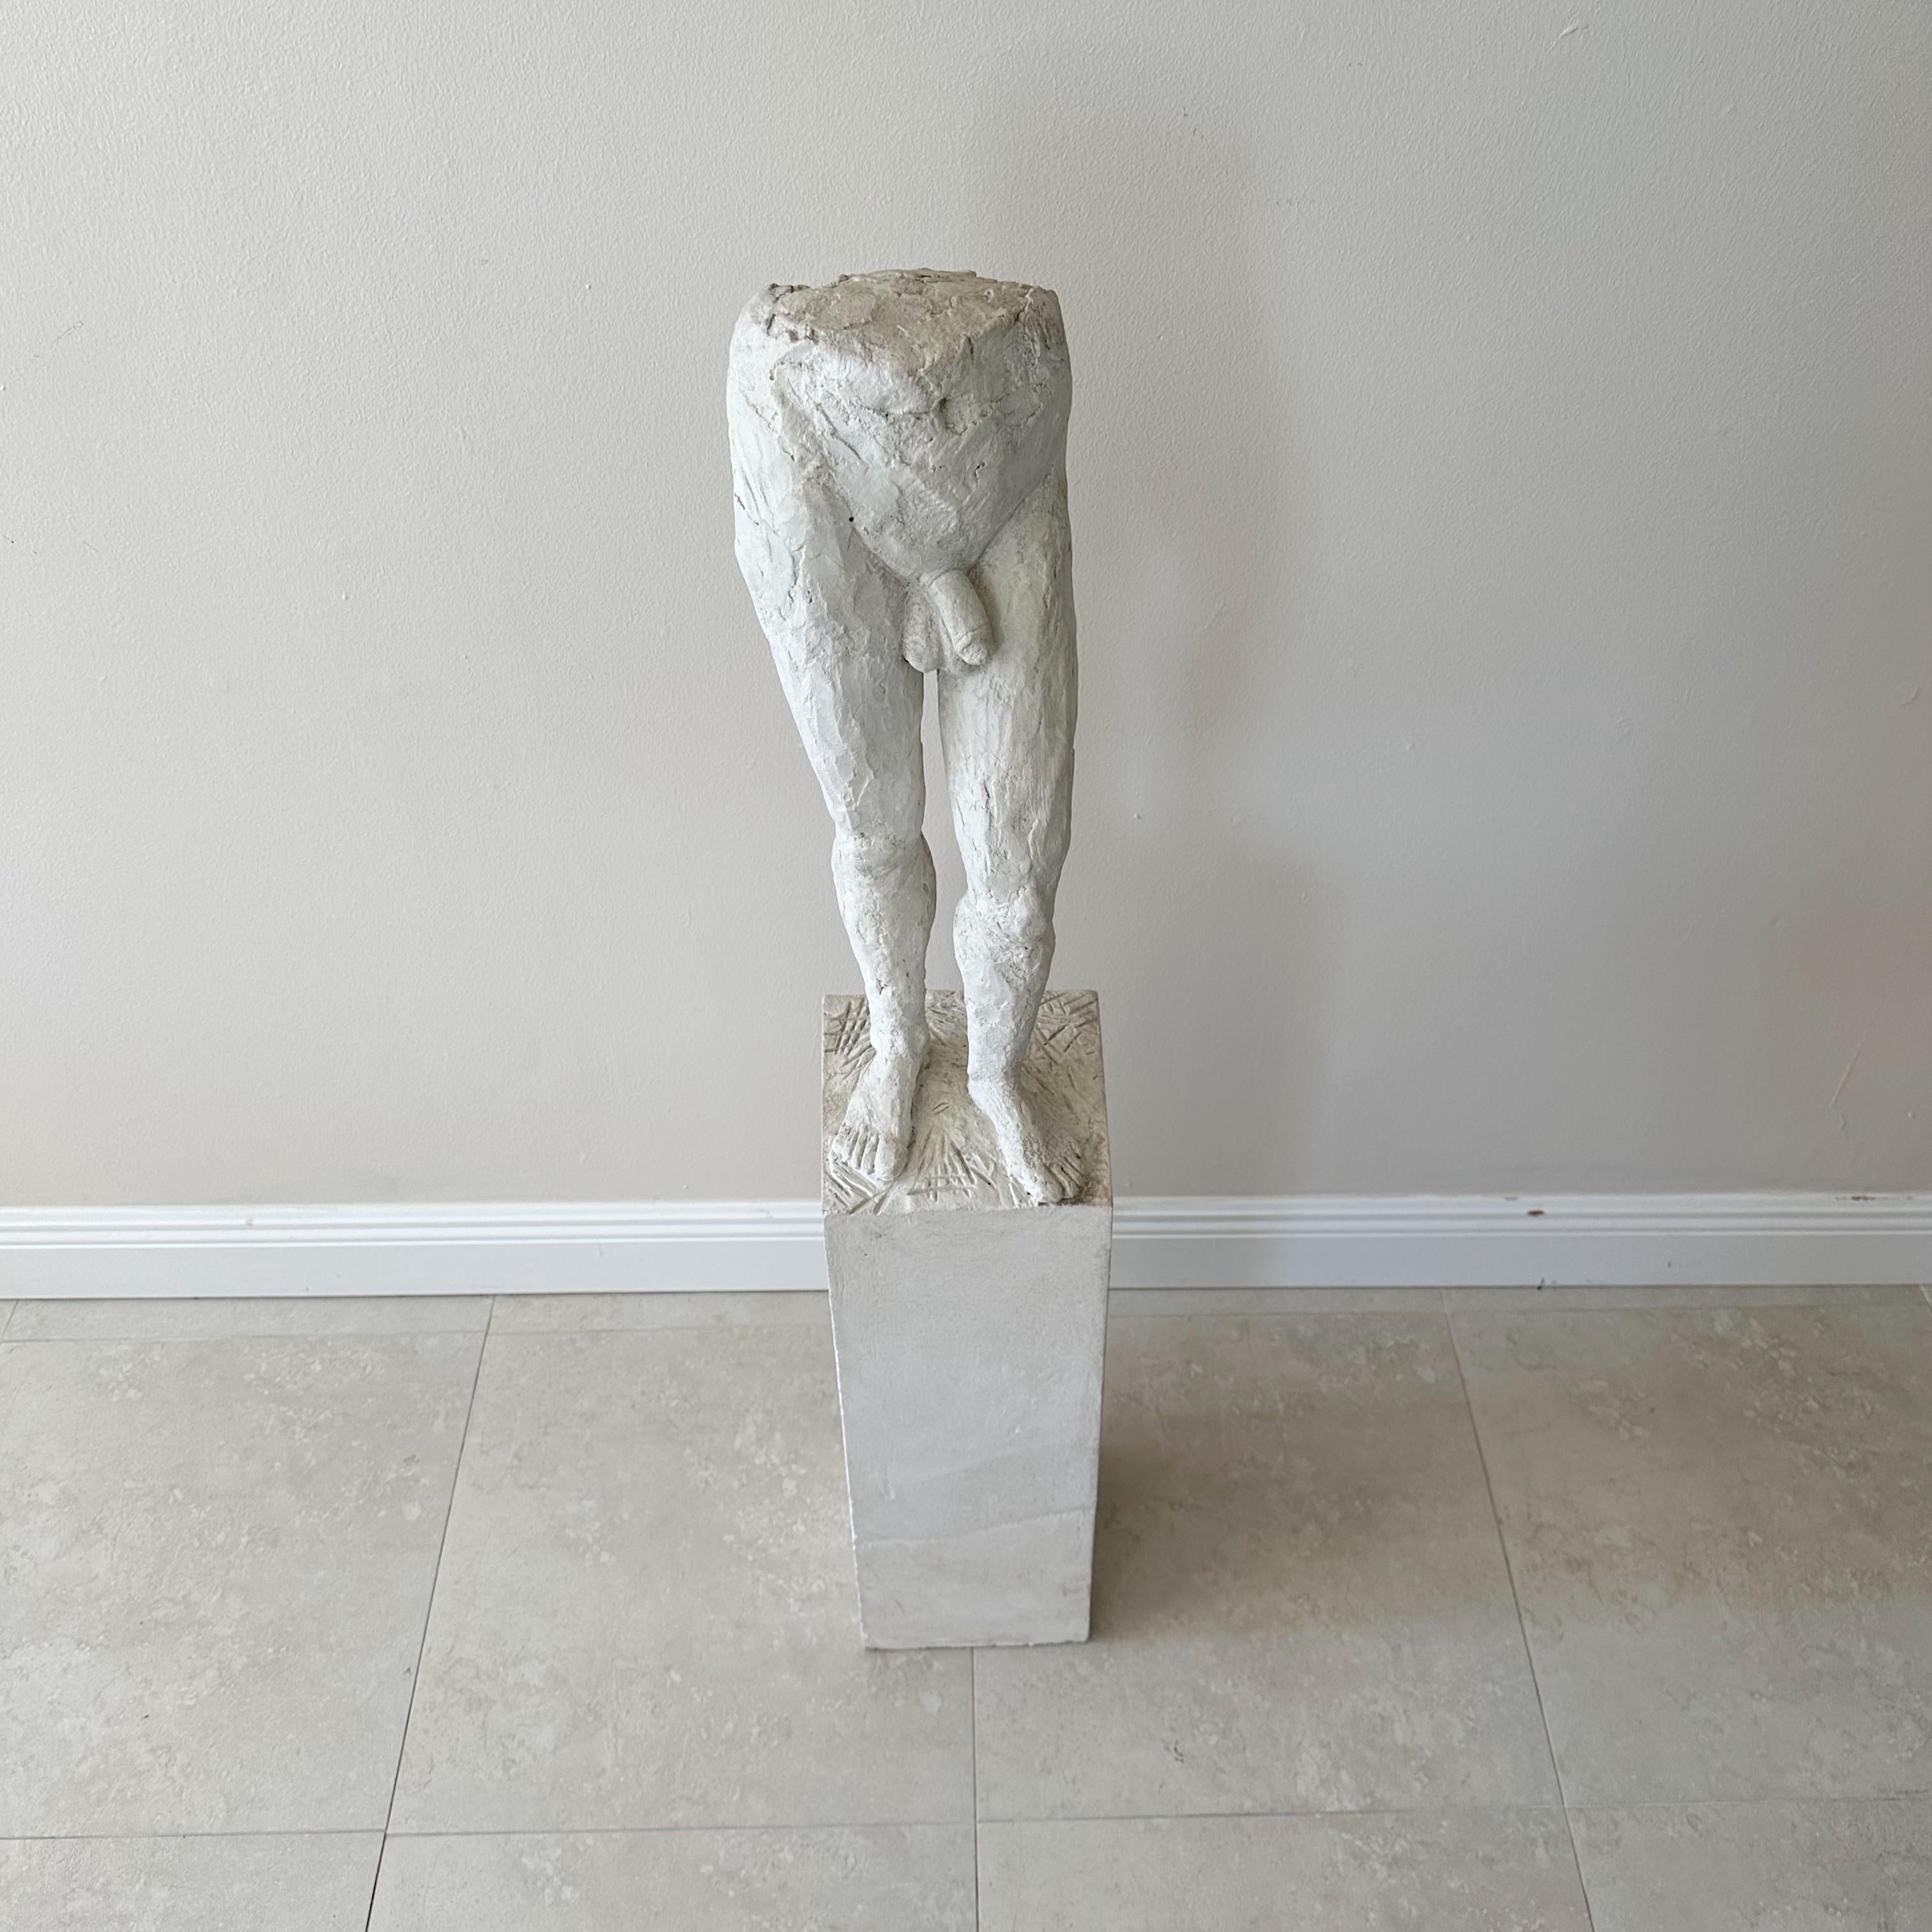 Zum Verkauf steht ein einzigartiger und auffälliger figurativer Torso aus verputztem Zement, der an einer rechteckigen Zementsäule befestigt ist, die ebenfalls verputzt ist. Das Werk wurde von dem talentierten Künstler Orlando Chiang in seinem